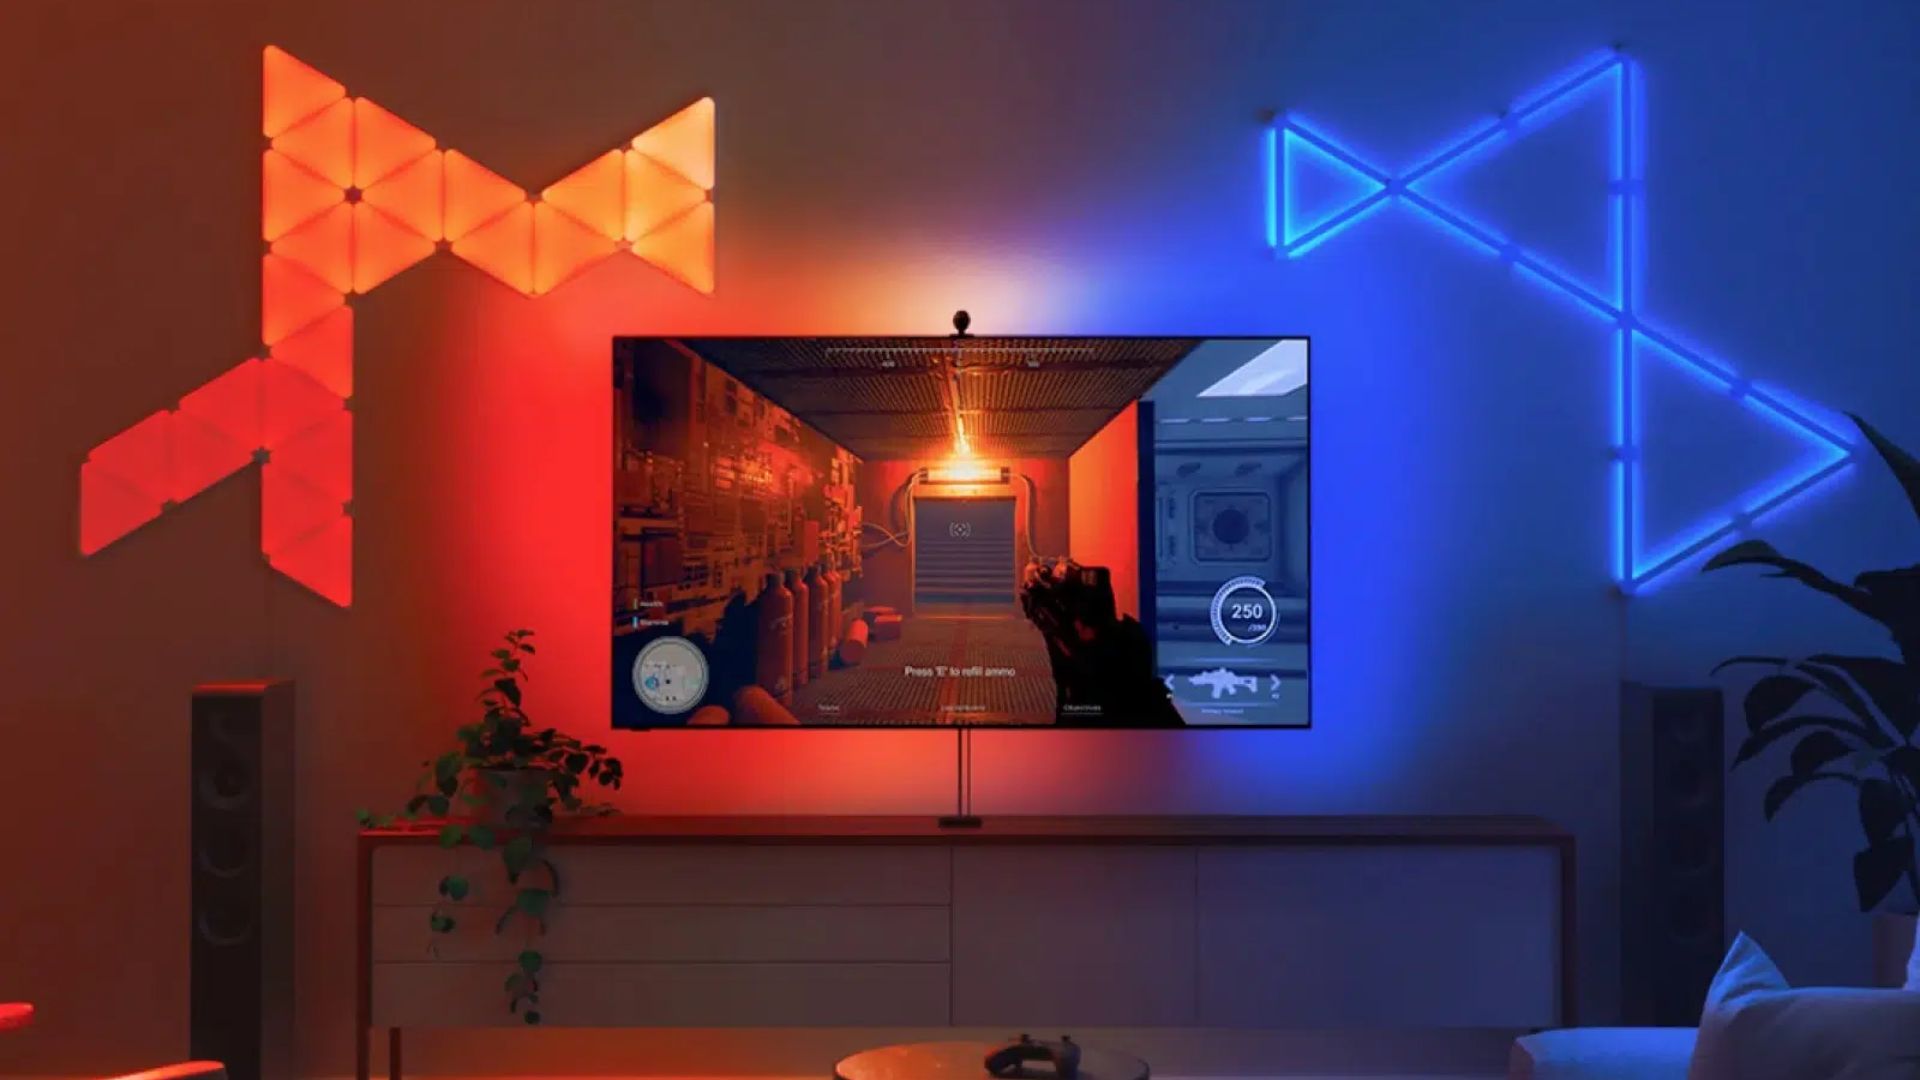 Nanoleaf 4D lighting set up in living room